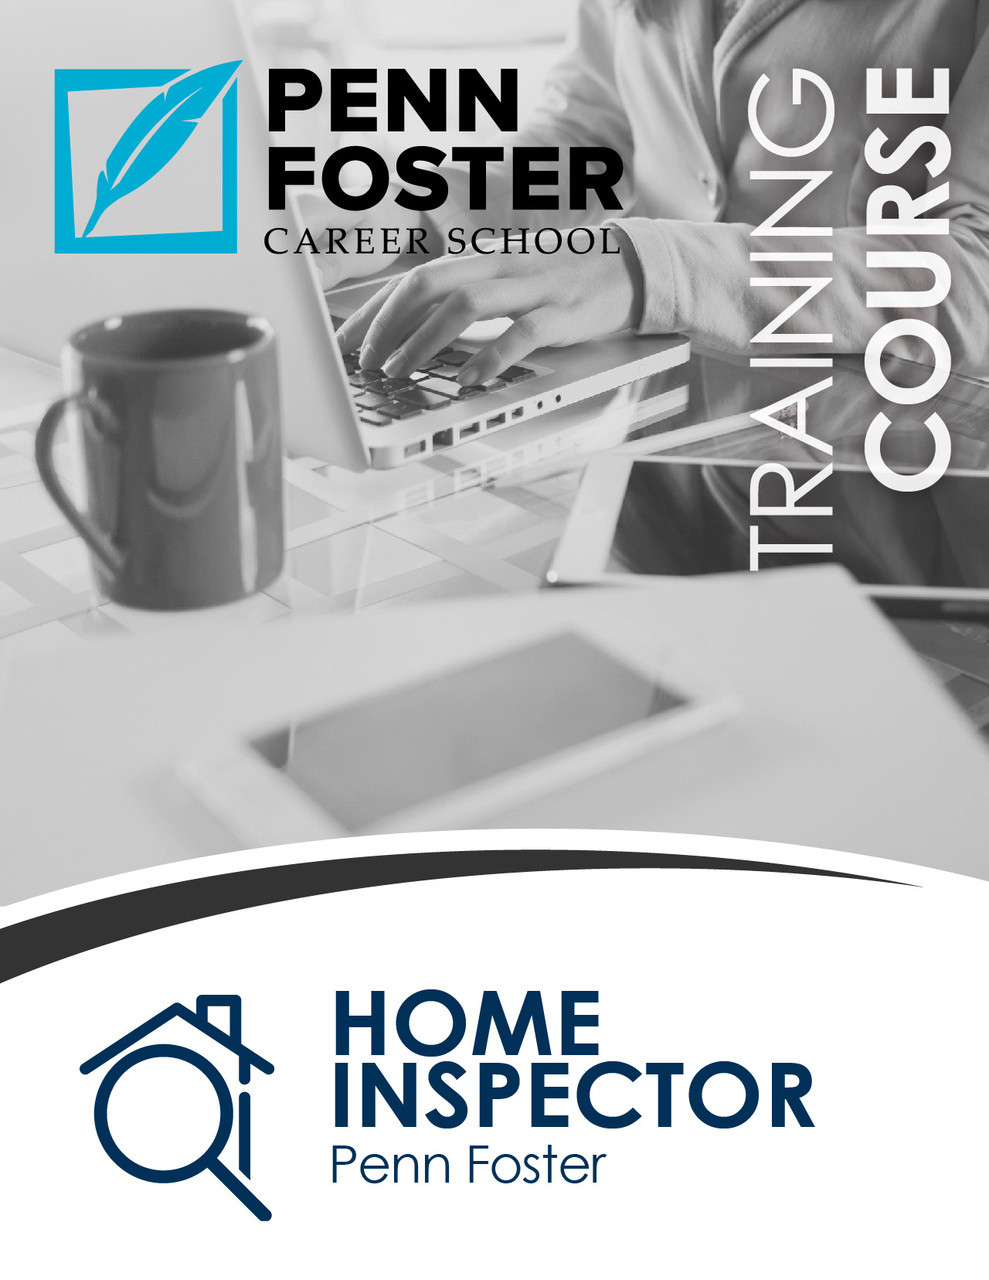 Penn Foster Home Inspector Career Diploma Program PSI